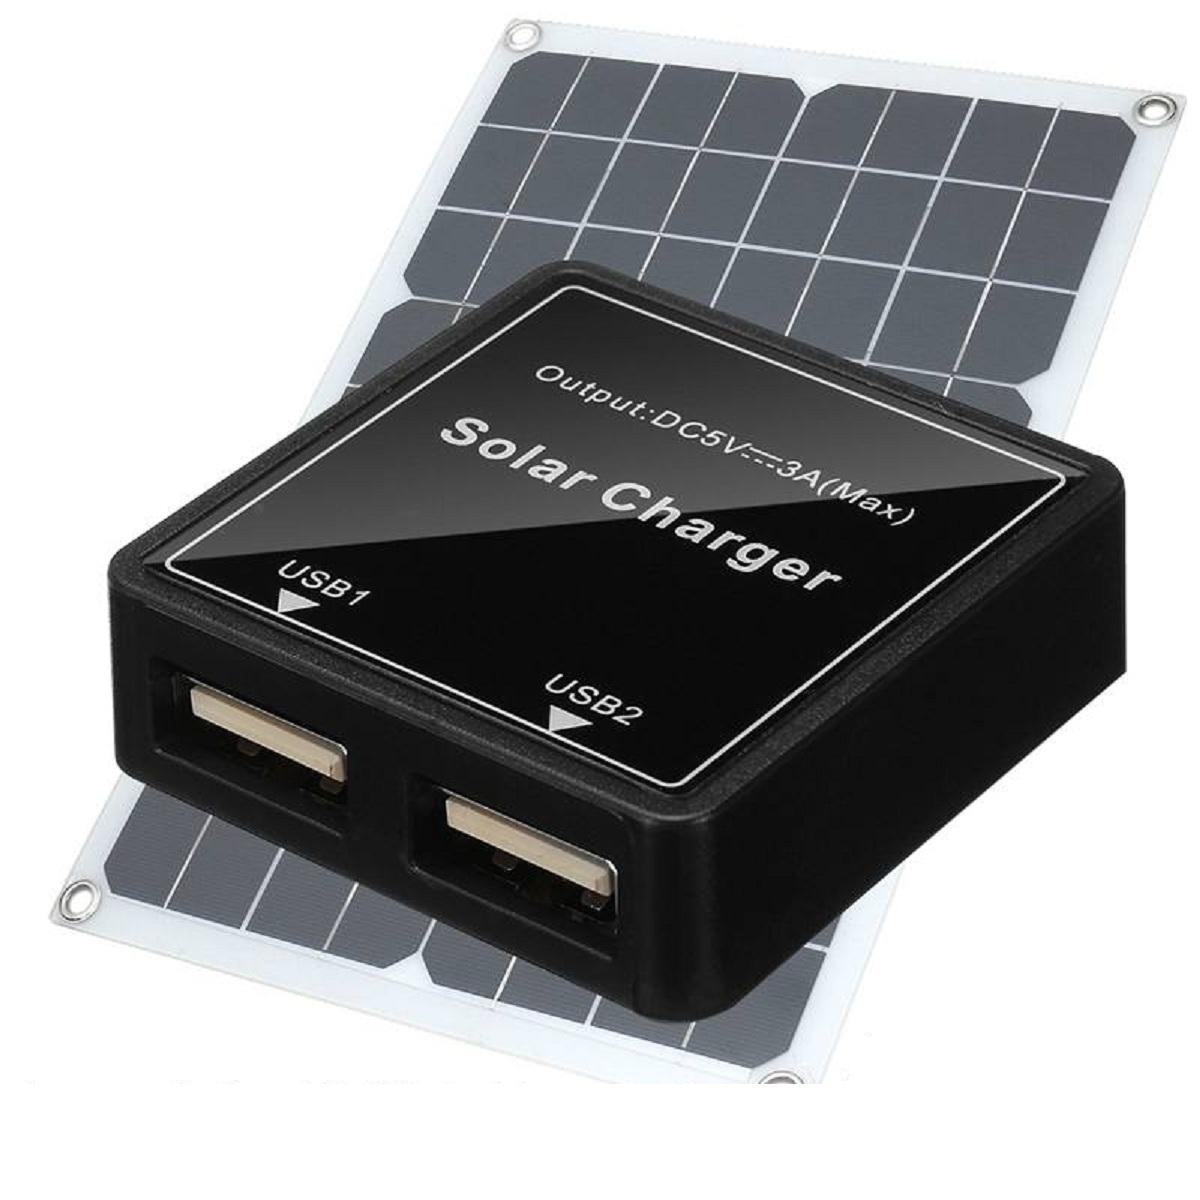 

5V 3A Dual USB Солнечная Панель Батарея Регулятор Мощность Контроллер заряда Черный